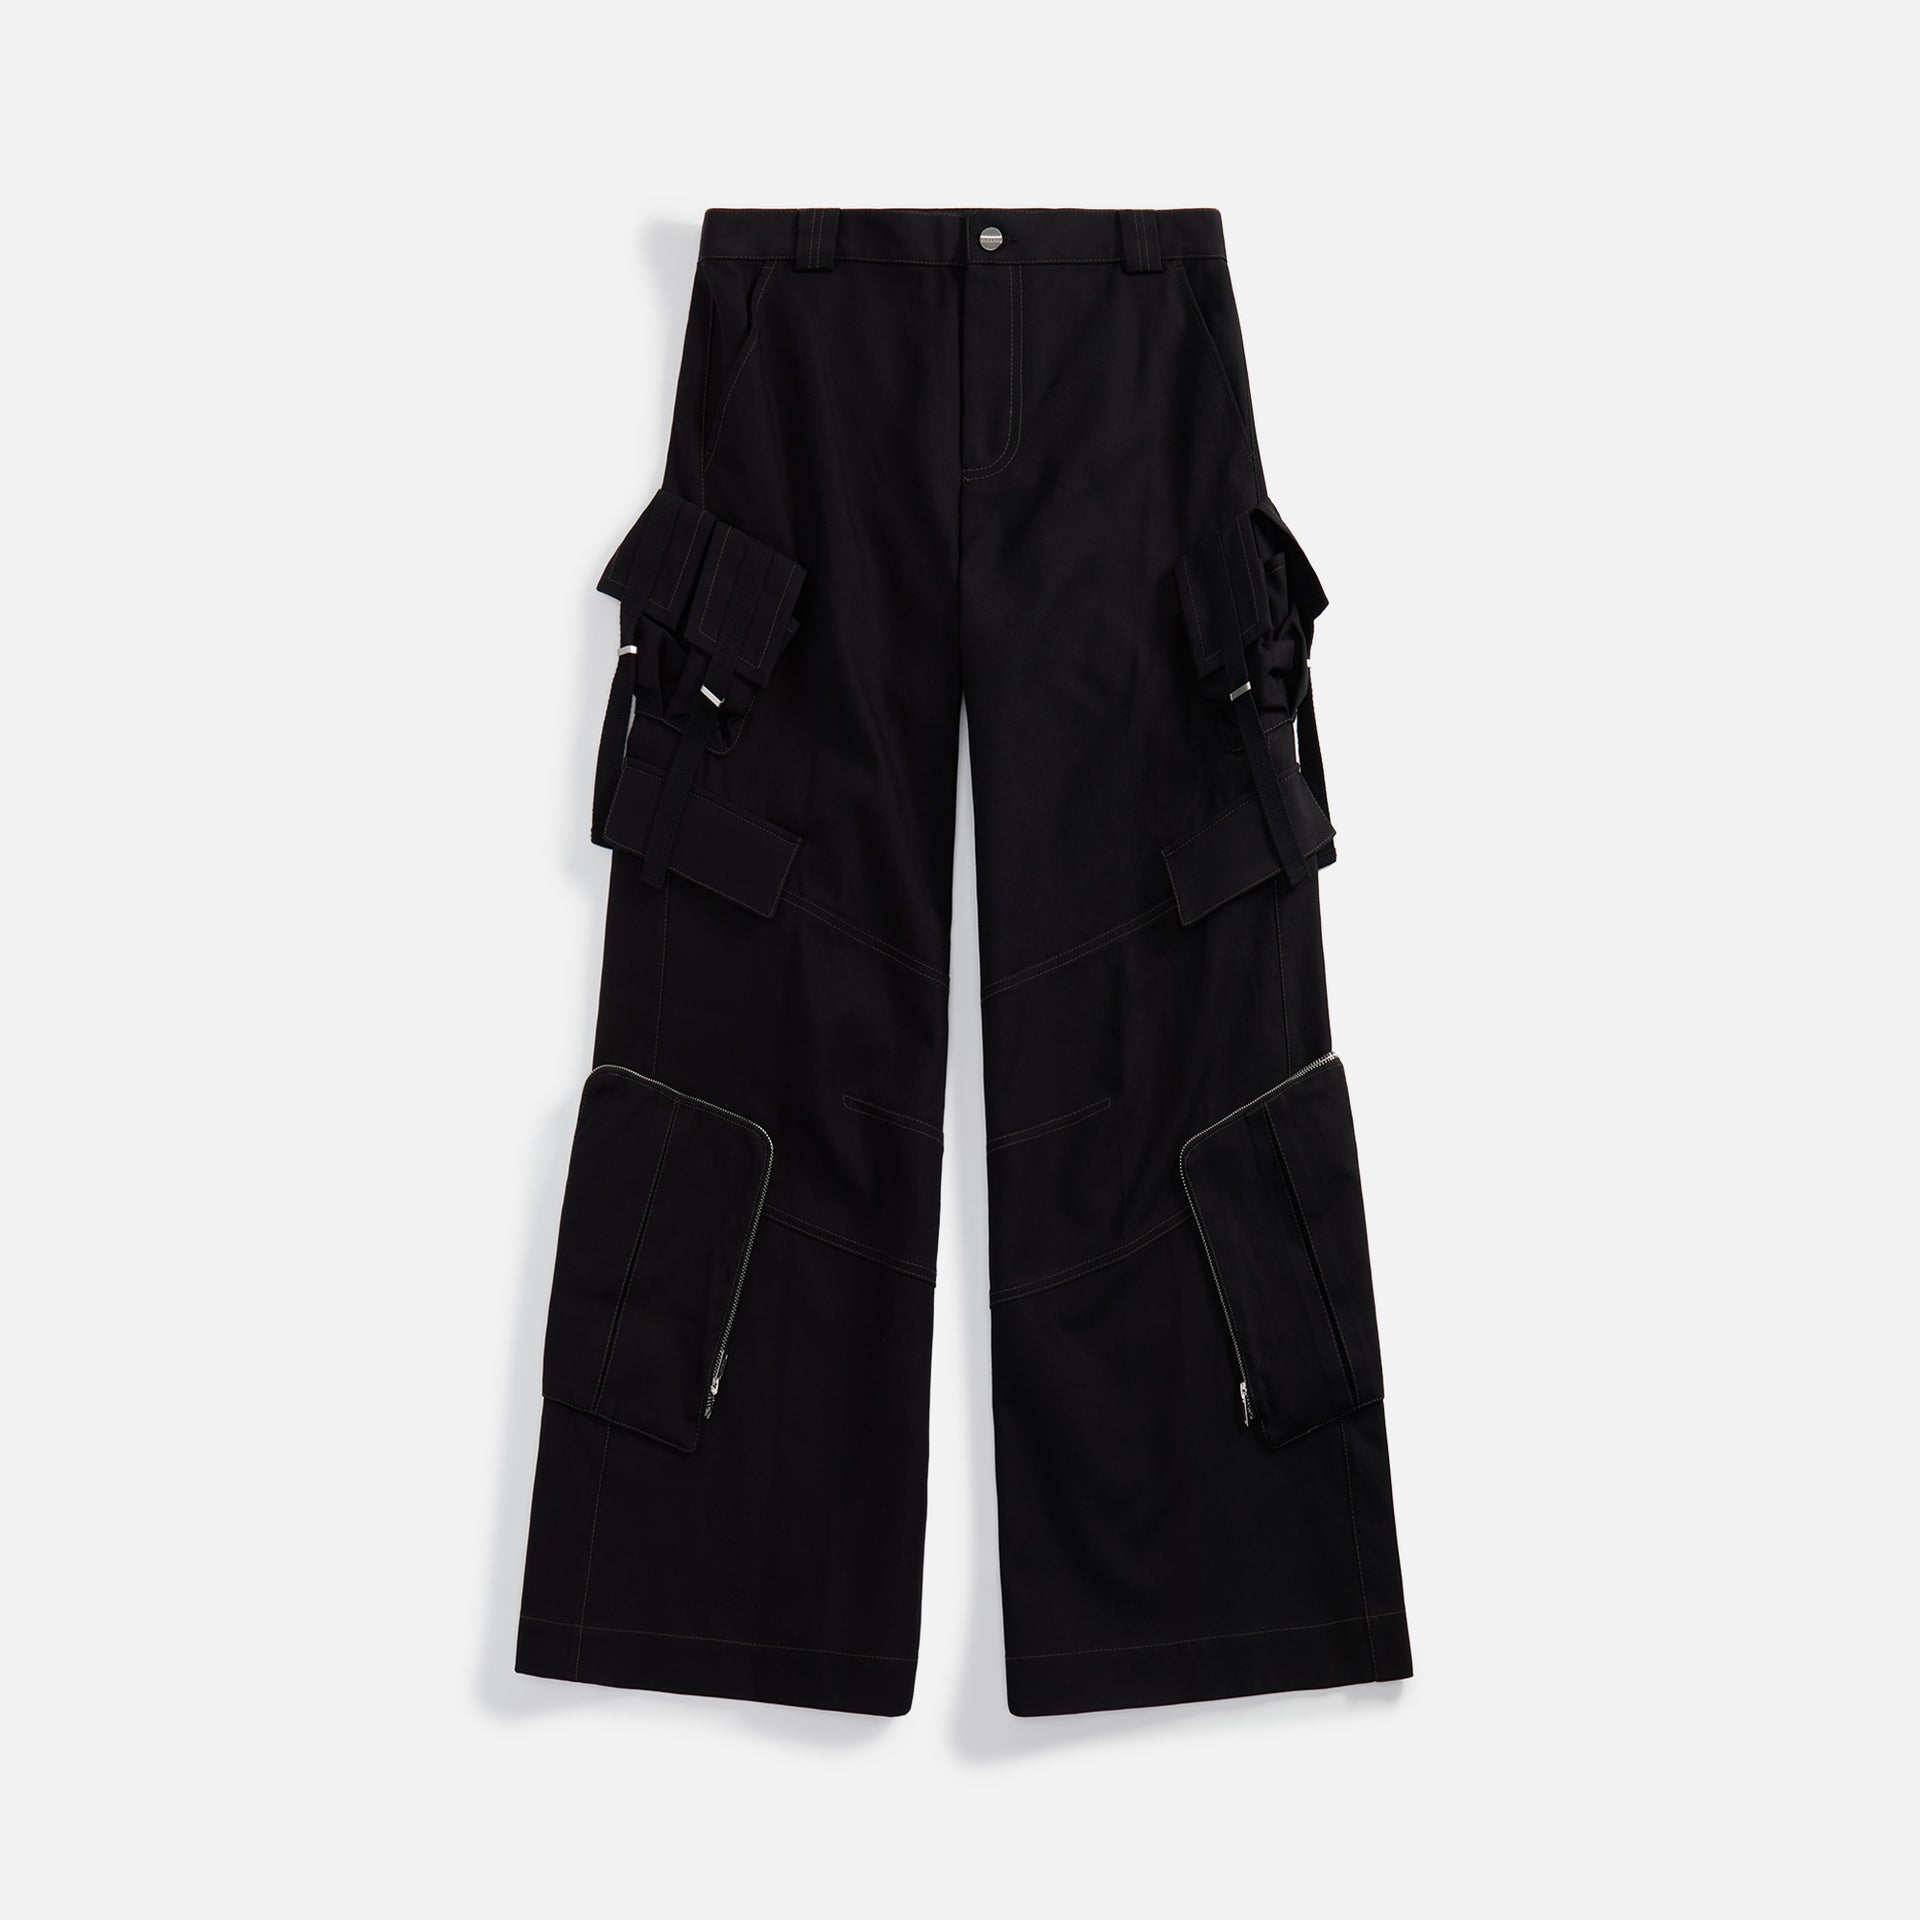 Dion Lee Multi Pocket Cargo Pant - Black